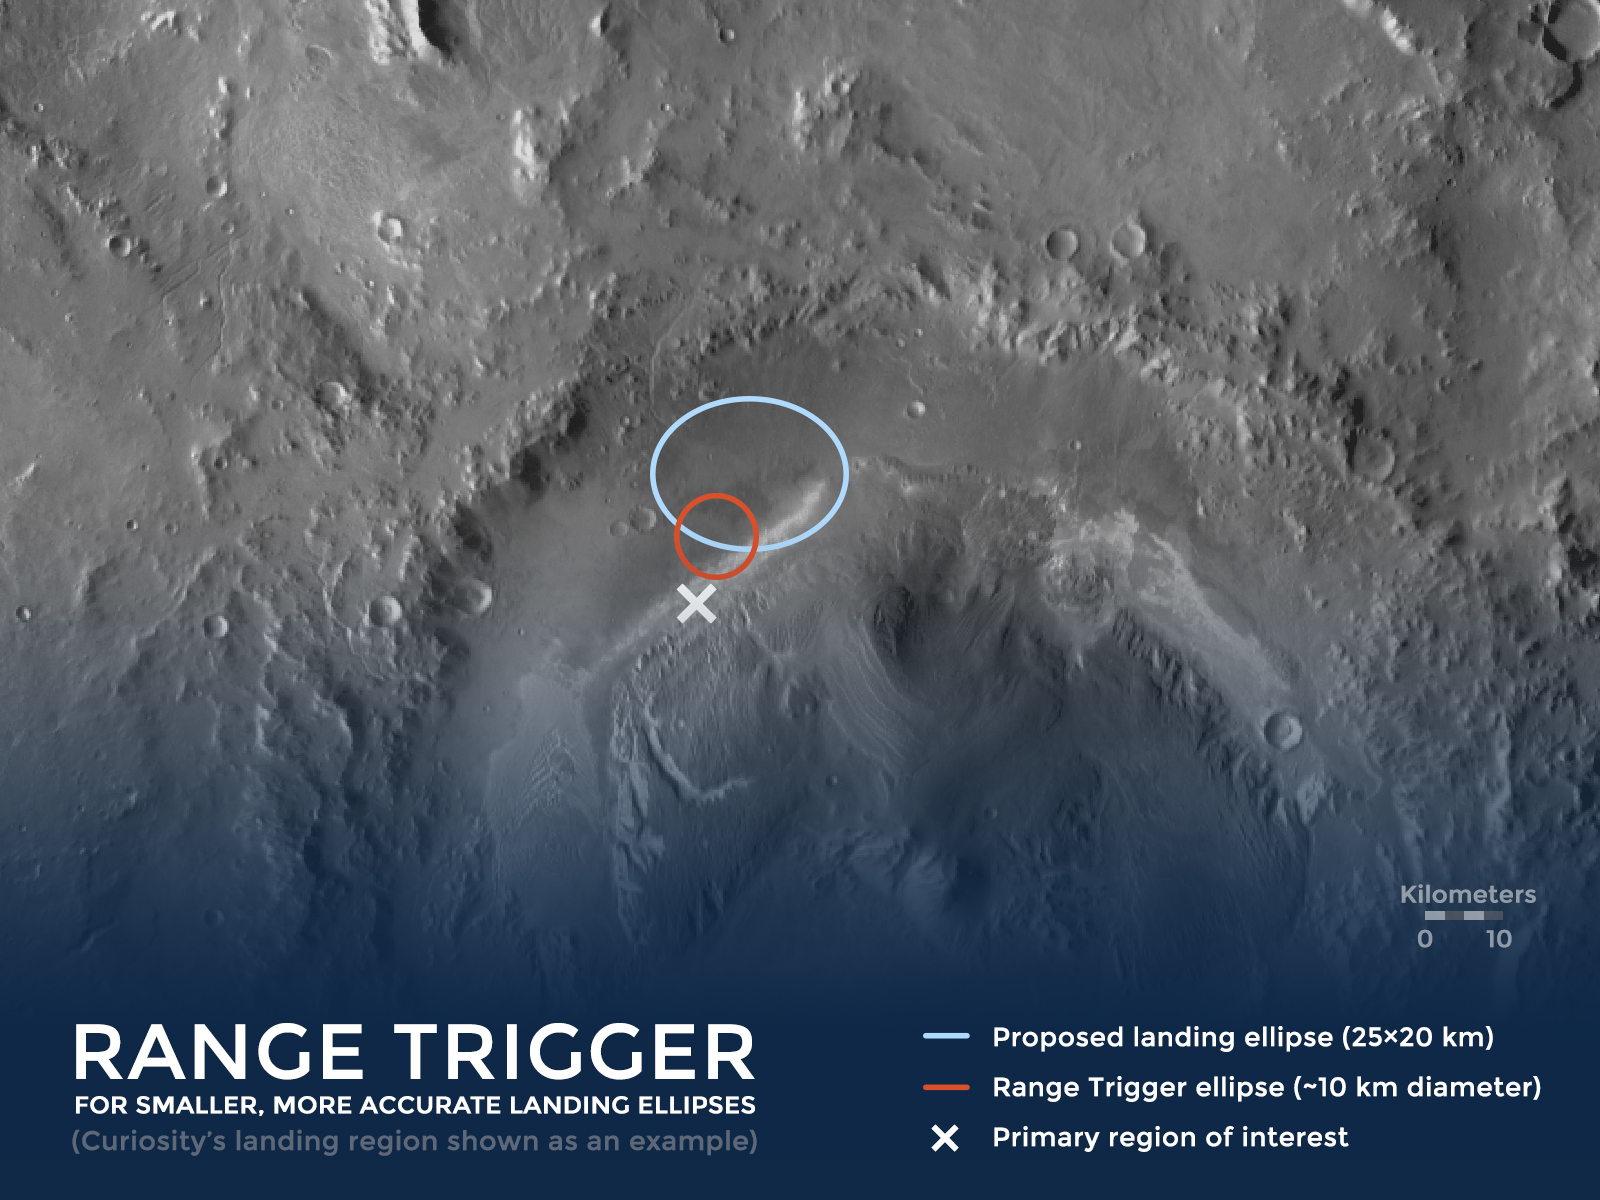 Range-Trigger-Rover-Landing-Site.jpg